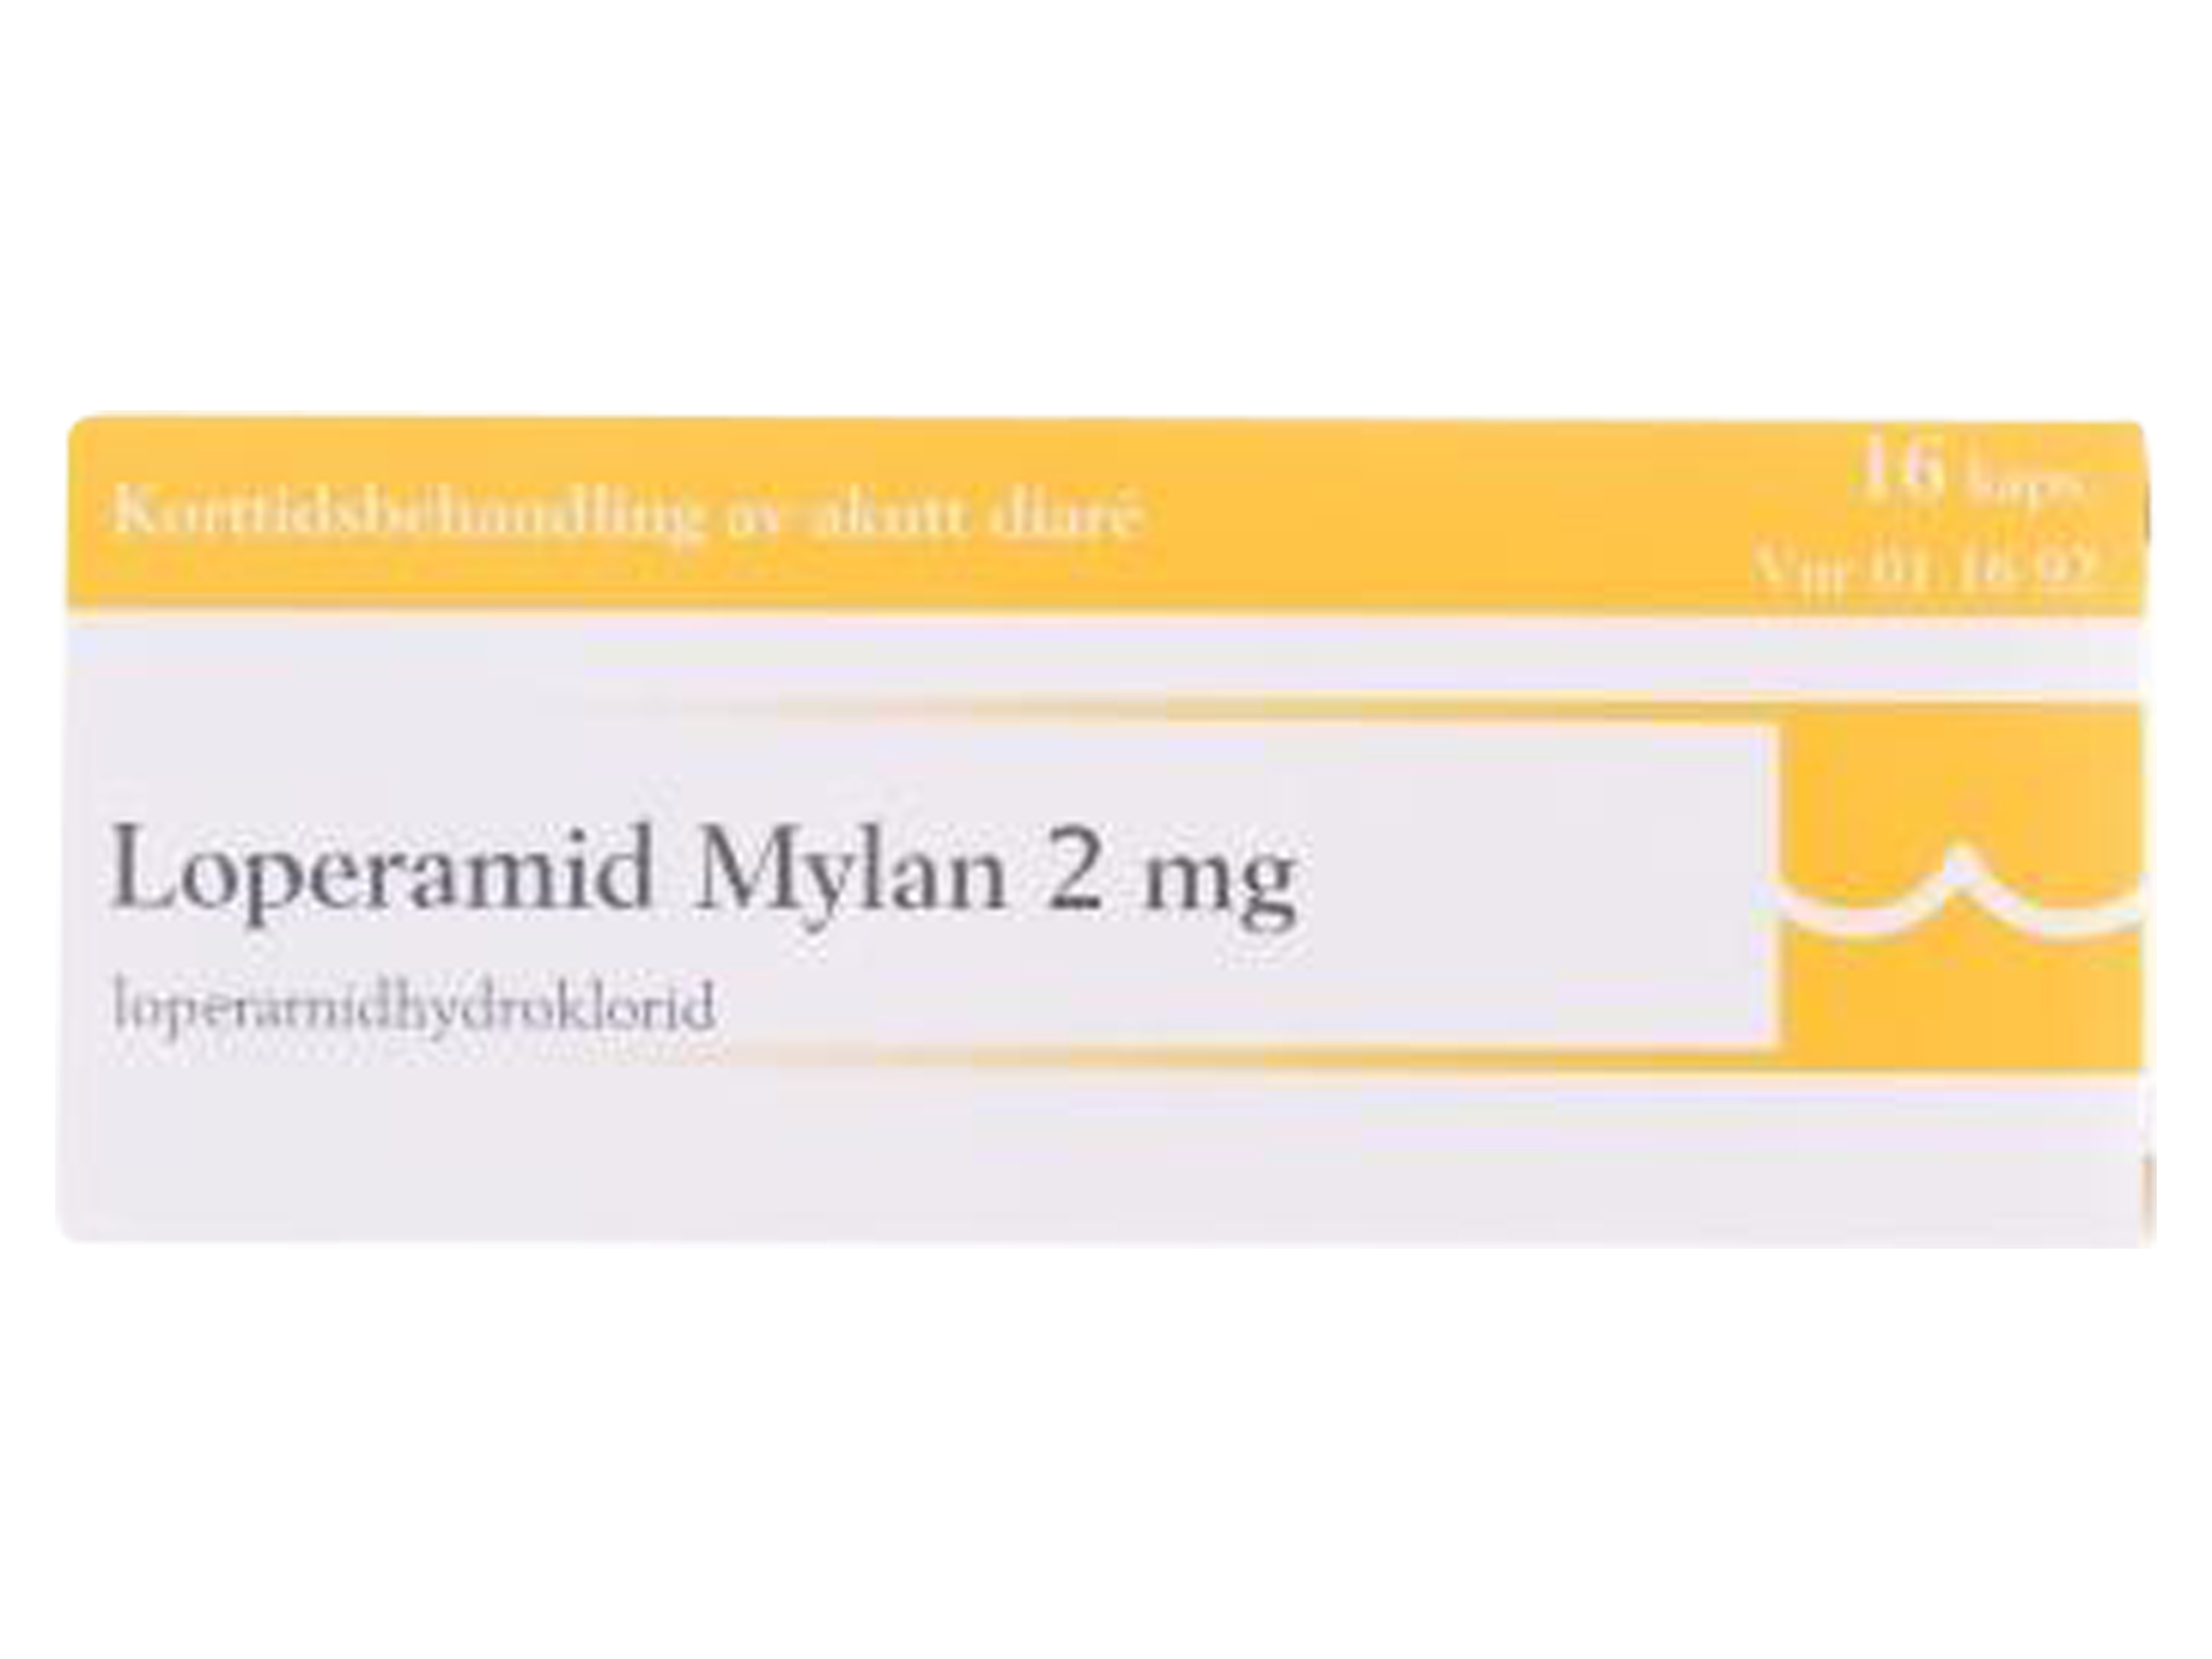 Loperamid Mylan kapsler 2 mg, 16 stk.